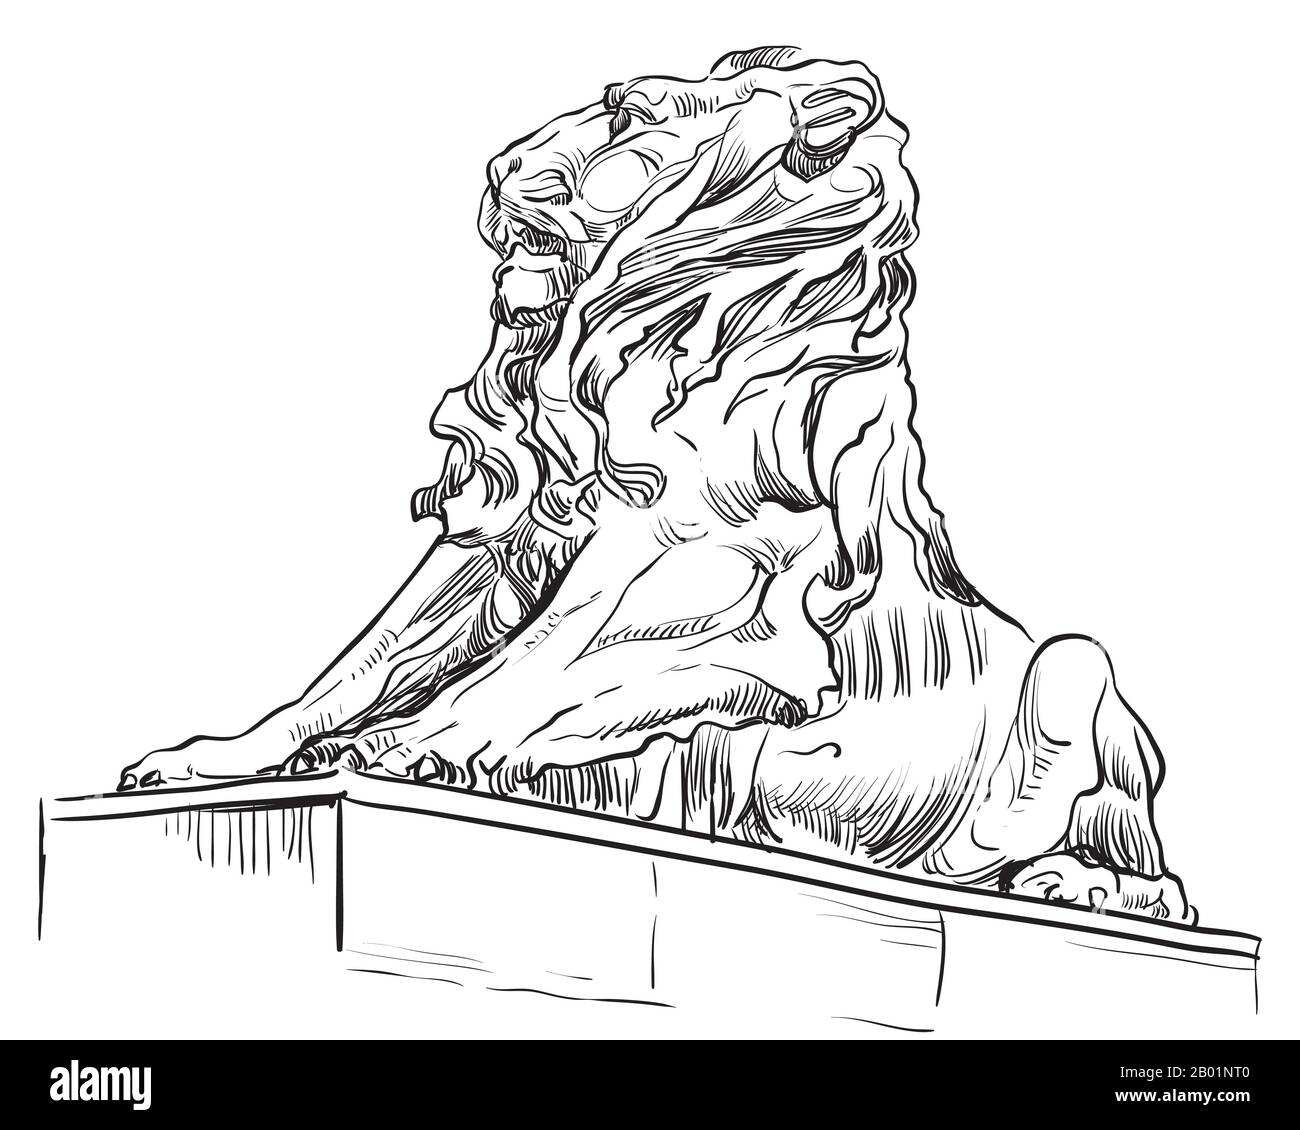 Esquisse de la vue en profil de la statue du lion. Illustration du dessin vectoriel en couleur noire isolée sur fond blanc. Elément graphique pour la conception. Stock il Illustration de Vecteur